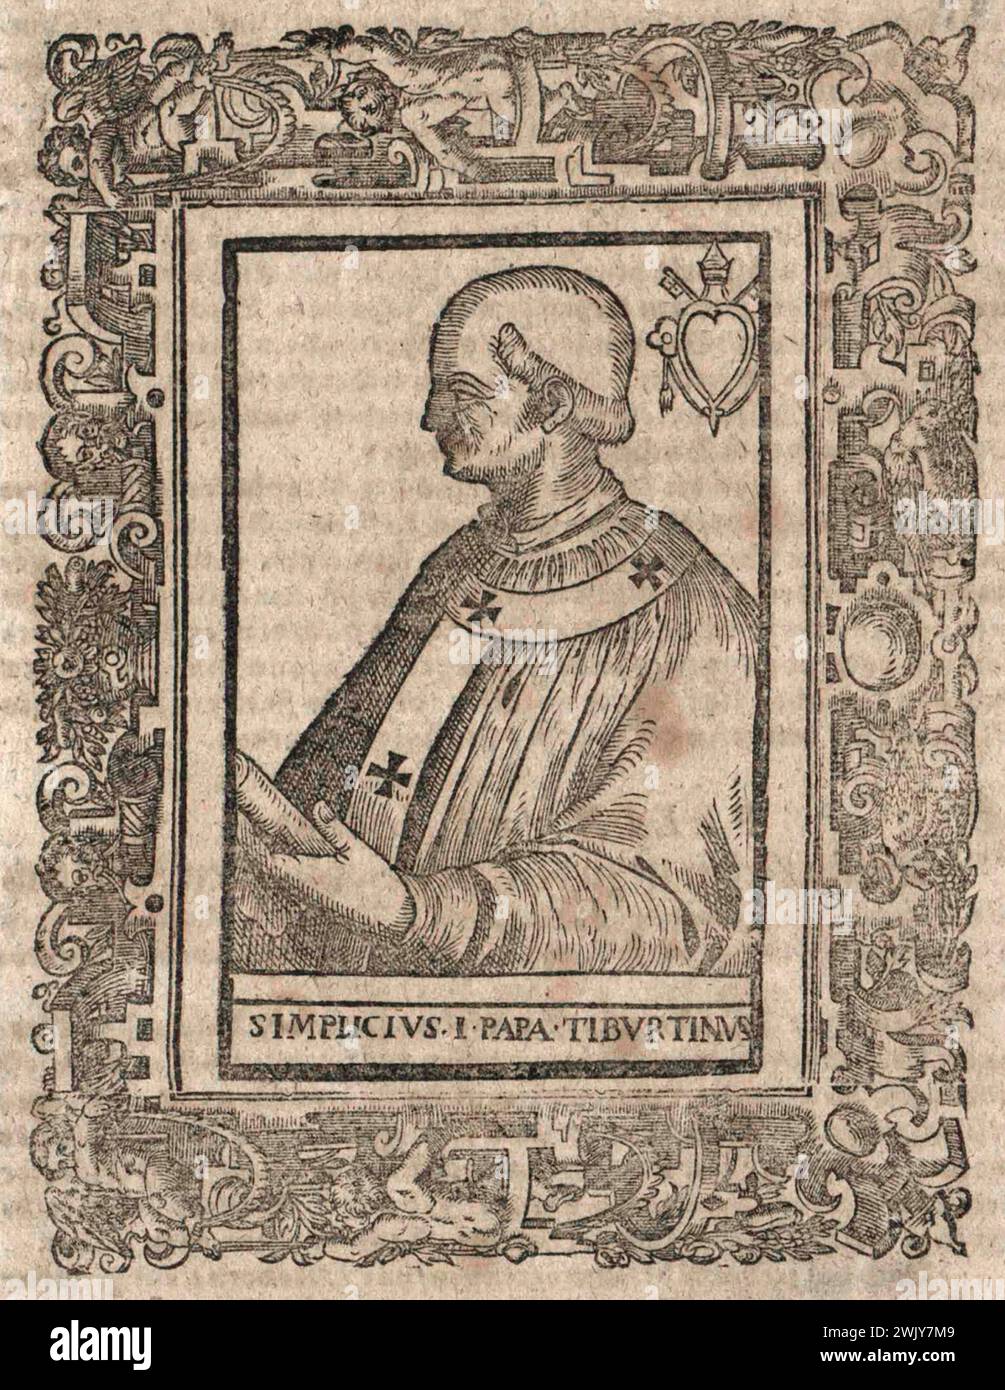 Ein Kupferstich des Papstes Simplicius aus dem 17. Jahrhundert, der von 468 bis 483 päpstlich war. Er war der 47. Papst. Stockfoto